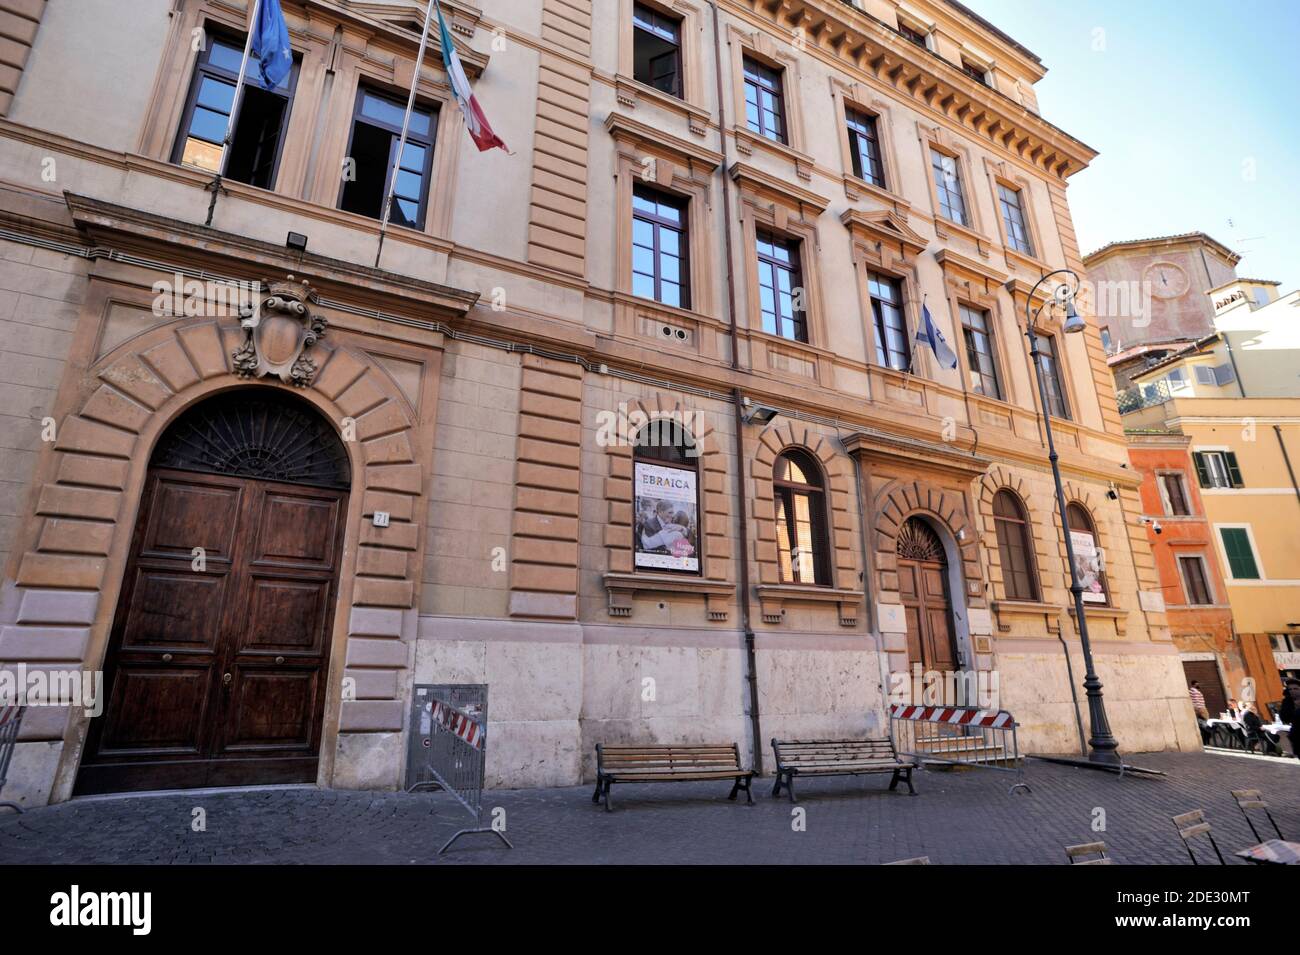 palazzo della cultura, via del portico d'ottavia, jewish ghetto, rome, italy Stock Photo